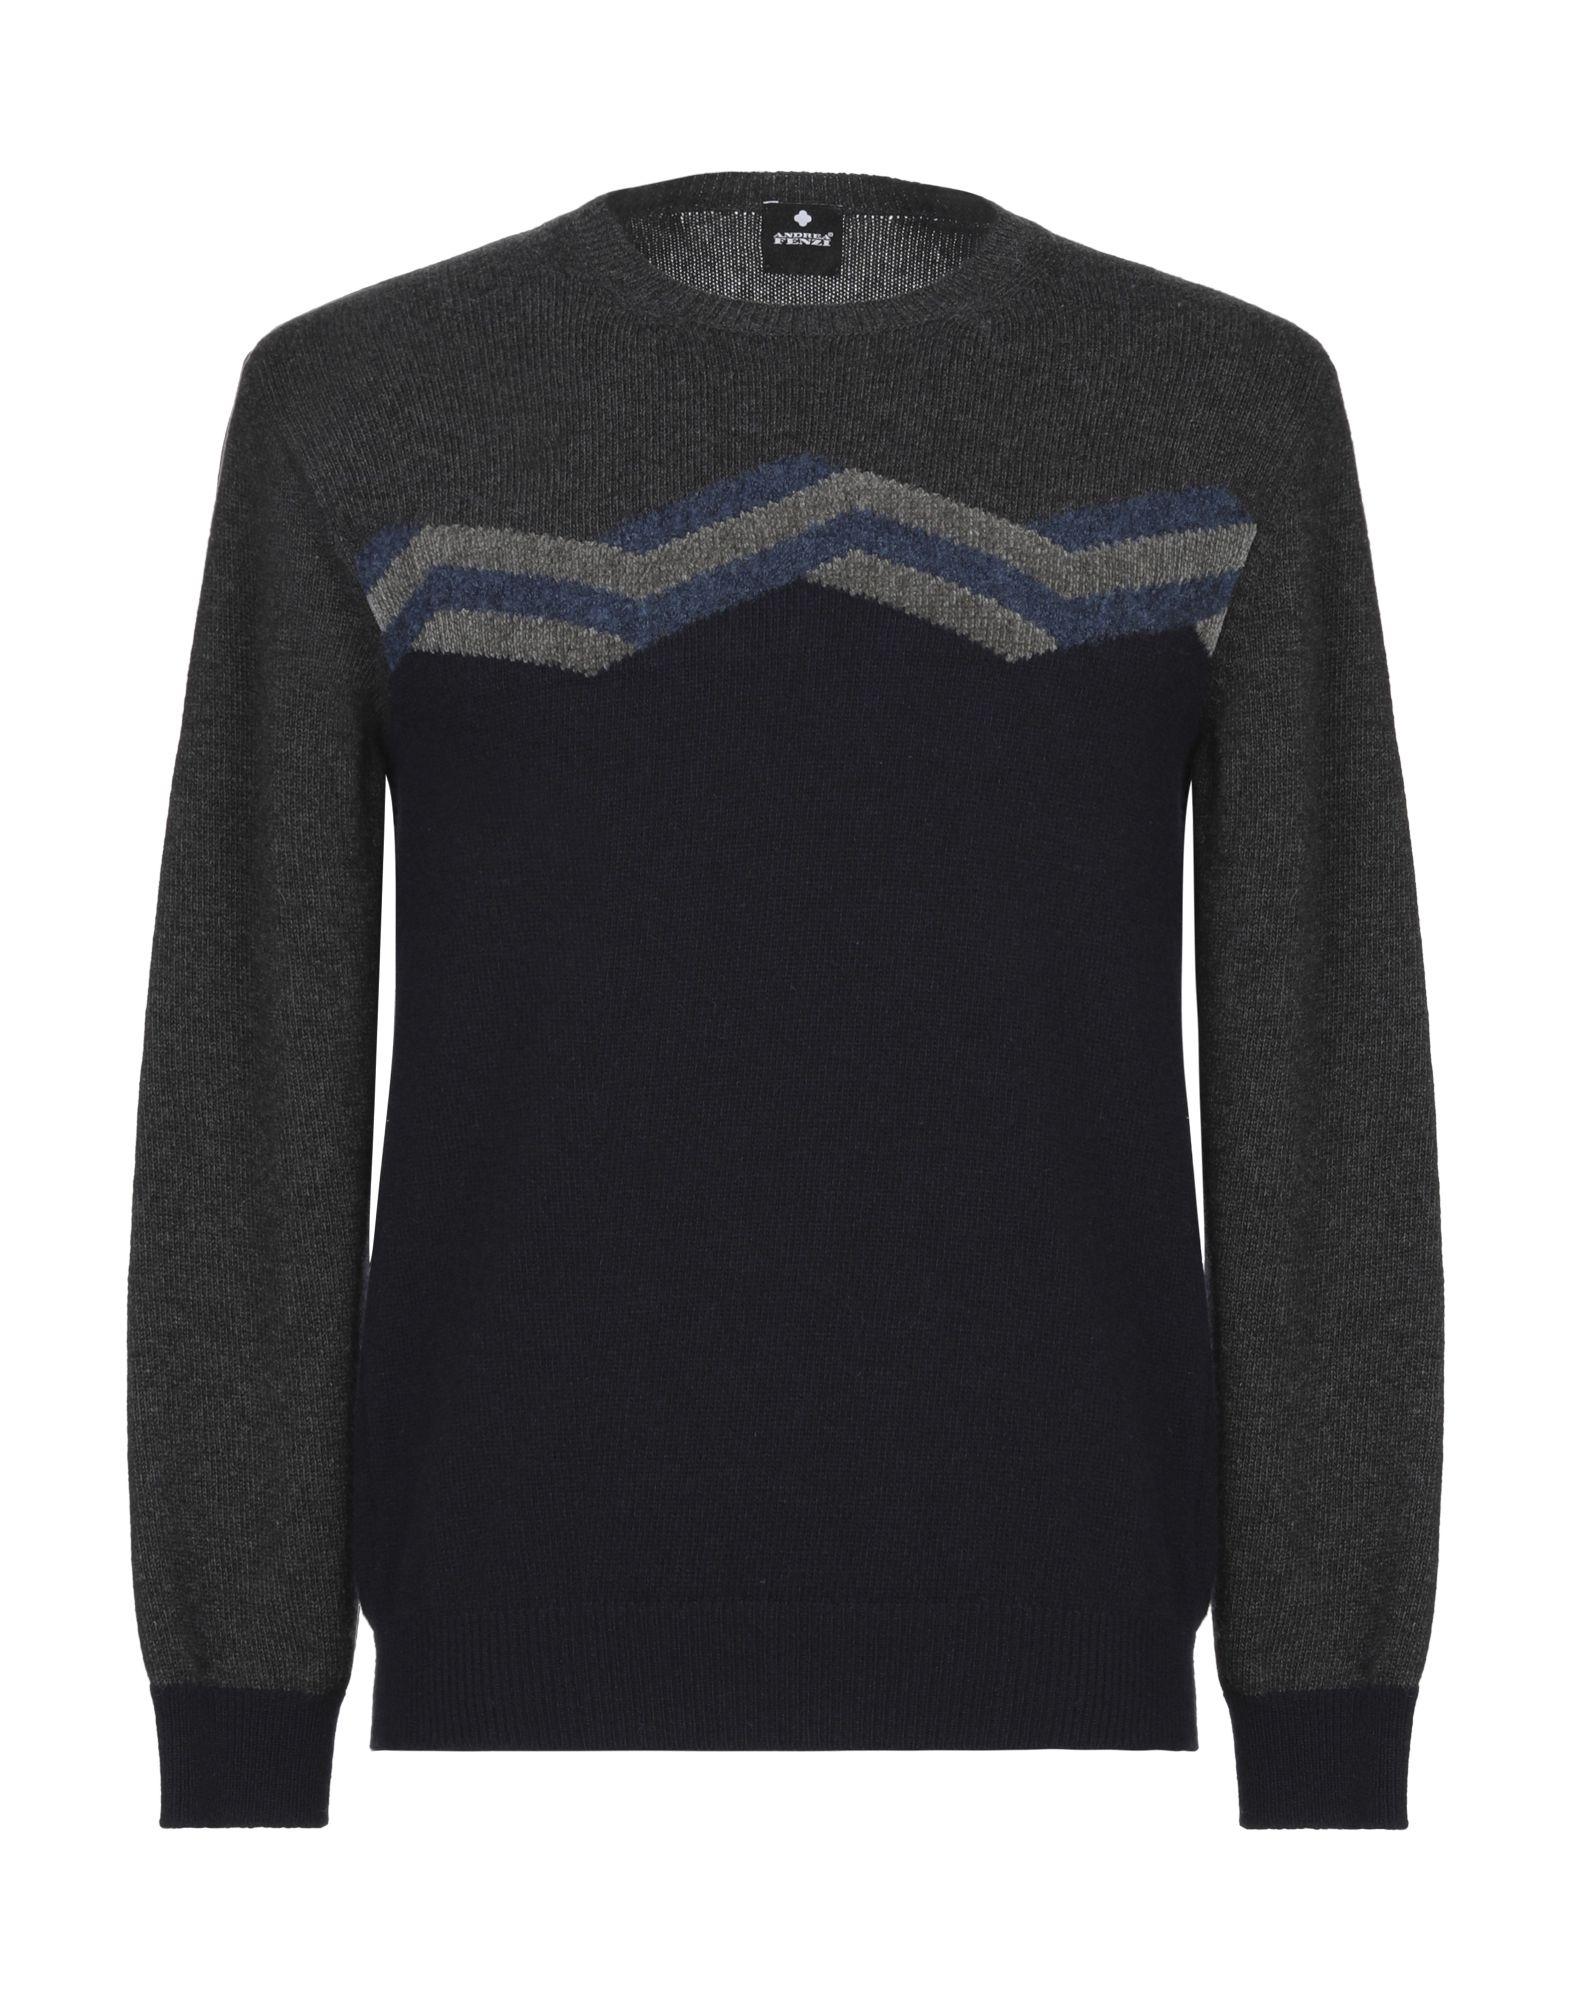 Andrea Fenzi Wool Sweater in Dark Blue (Blue) for Men - Lyst